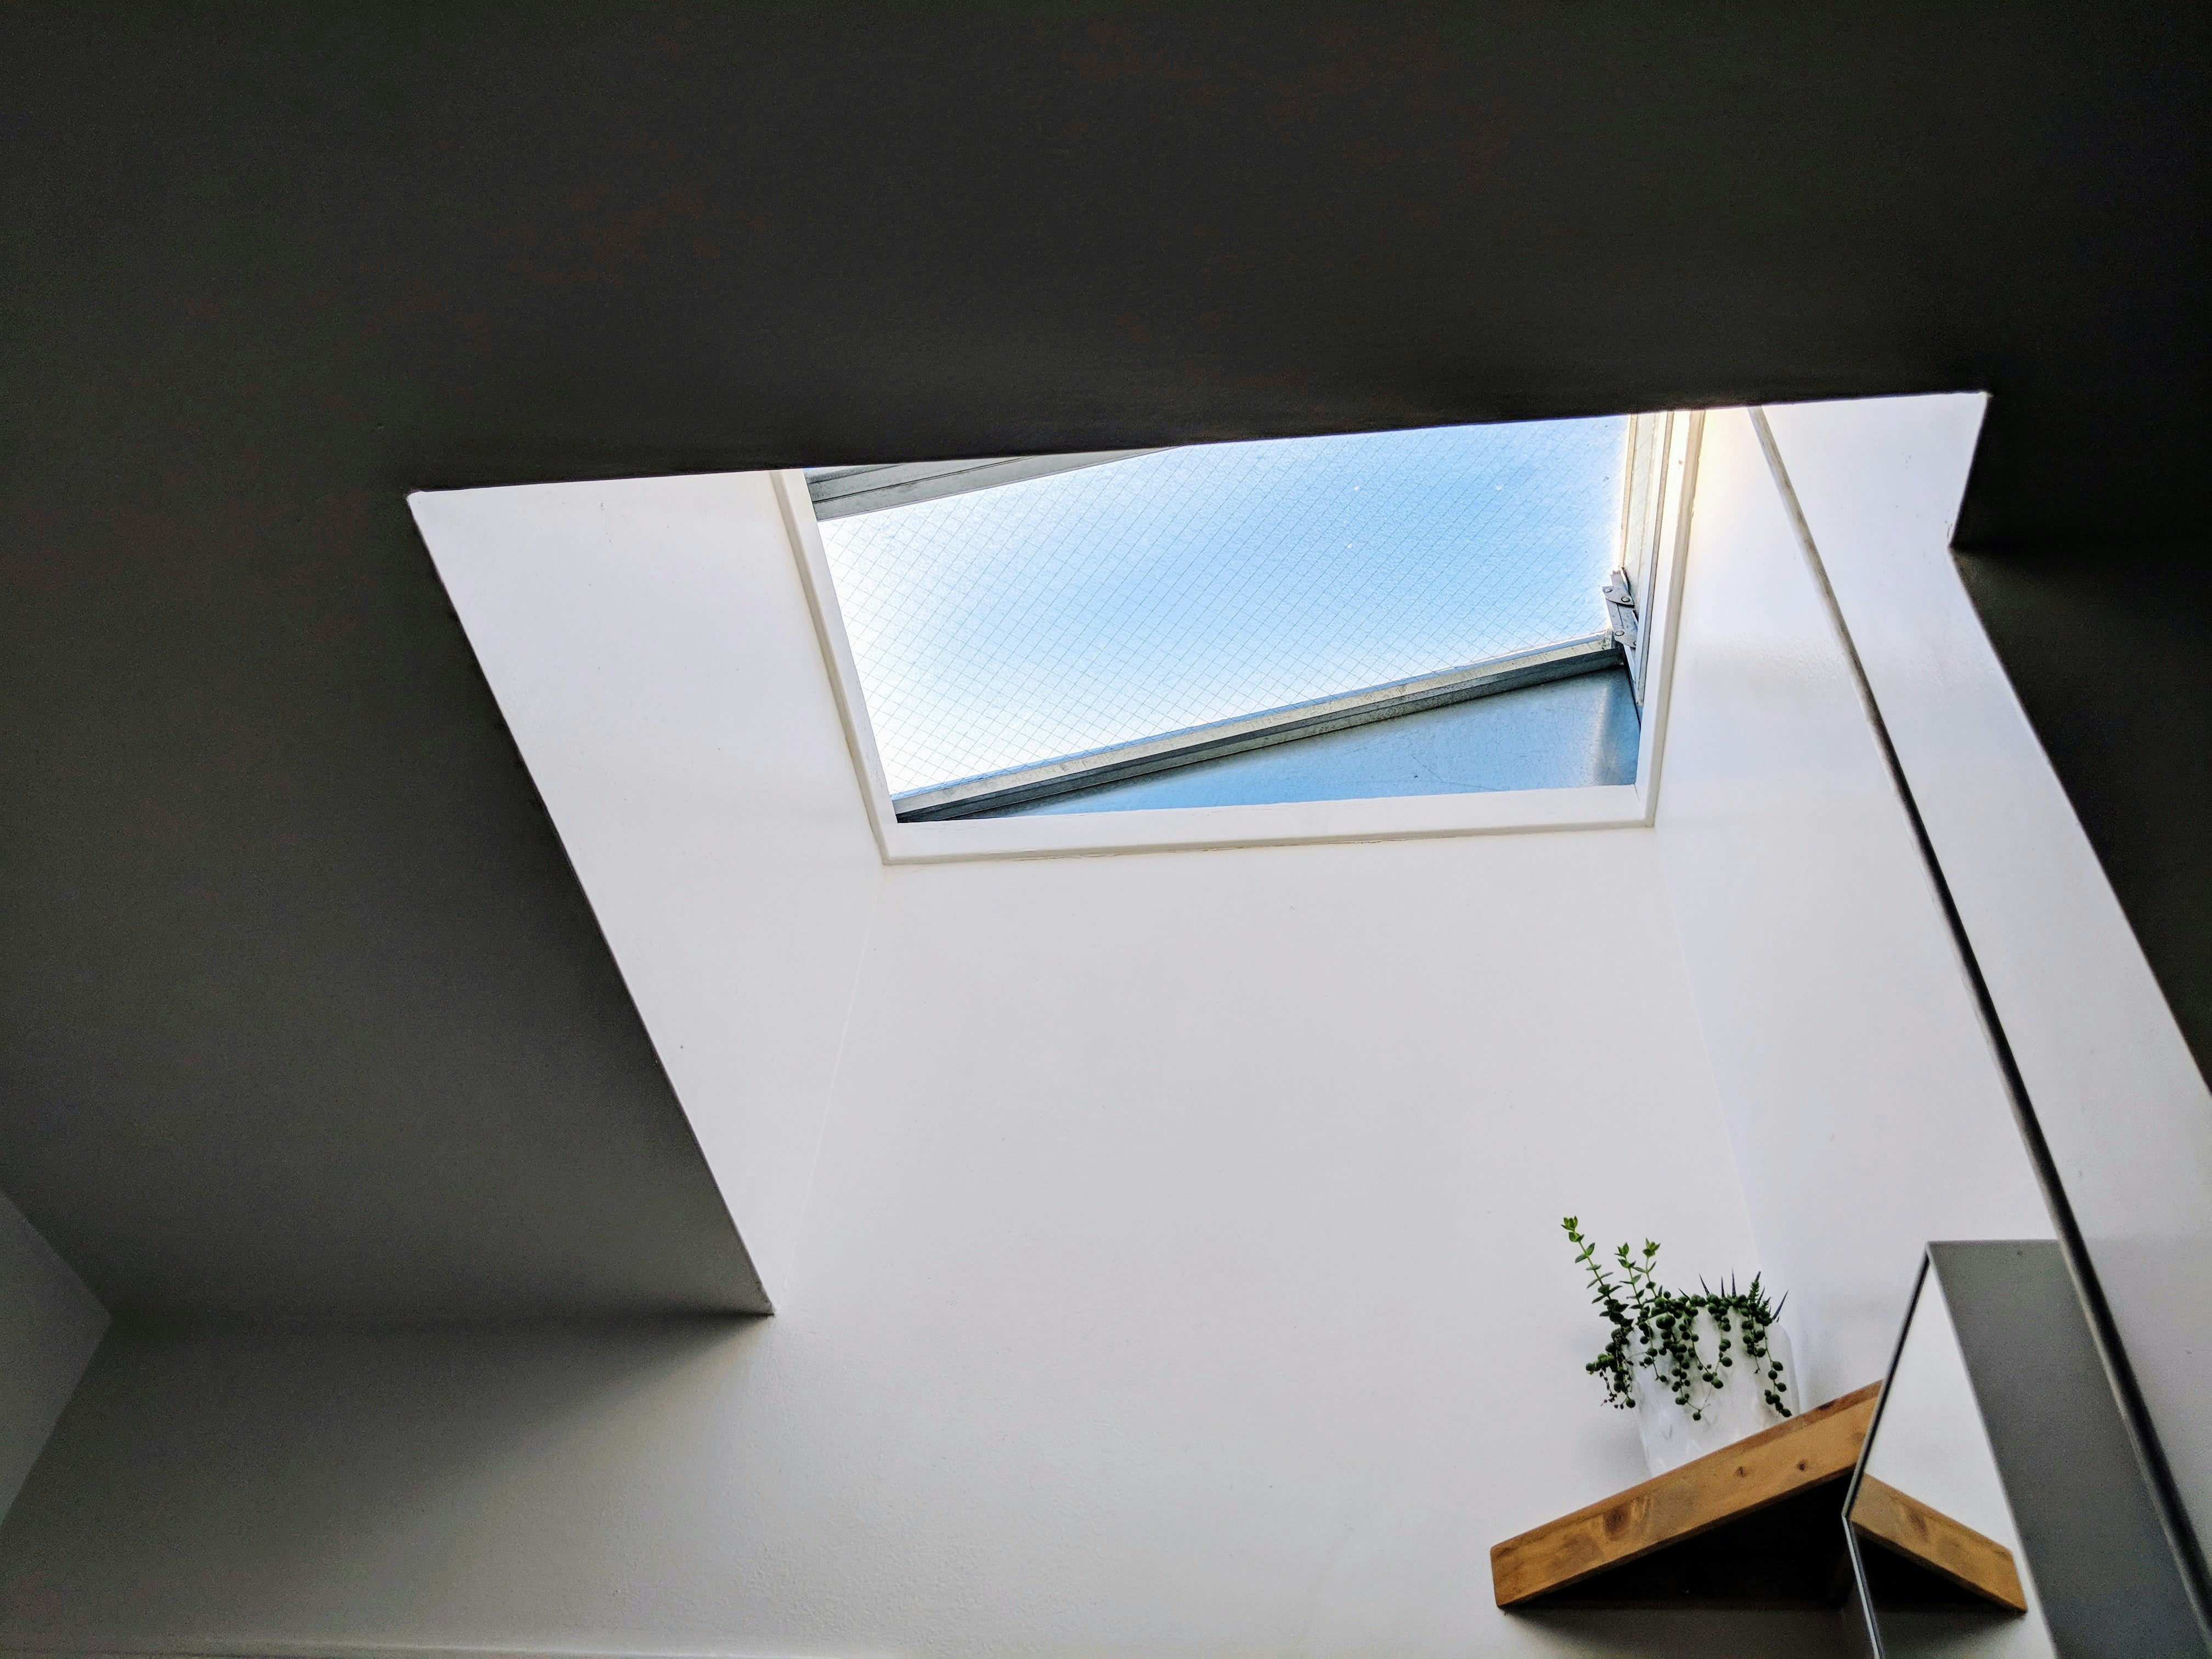 Fenstergestaltung meistern: Tipps und Tricks für strahlende Dachfenster